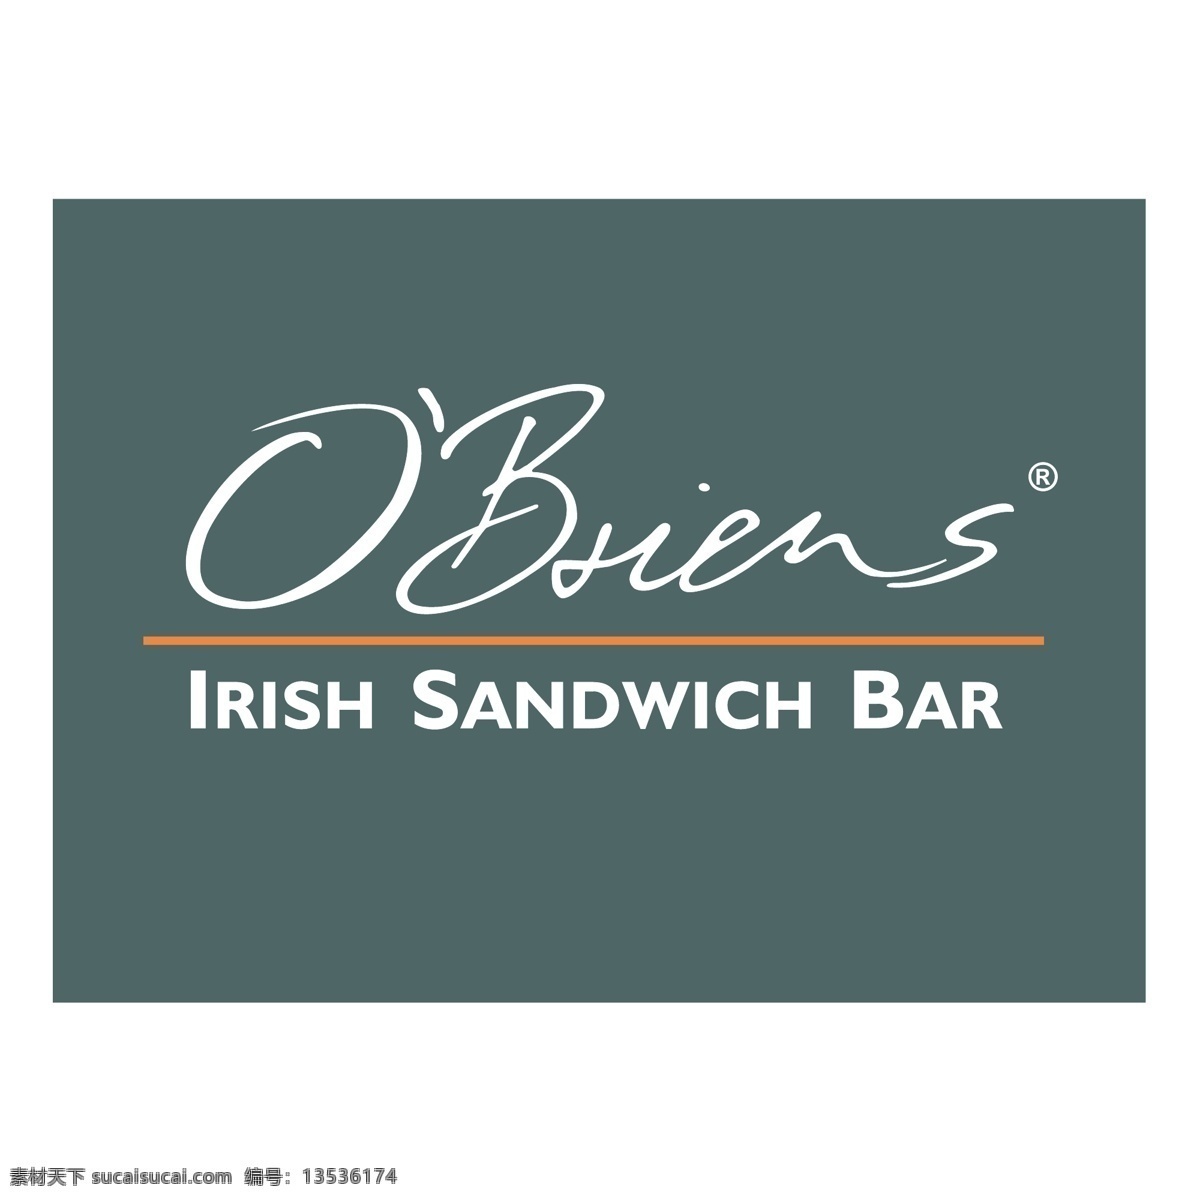 obriens 爱尔兰 三明治 酒吧 条形图 三明治酒吧 矢量 向量 爱尔兰酒吧 标志 杆 酒吧的爱尔兰 下载吧 矢量图 建筑家居